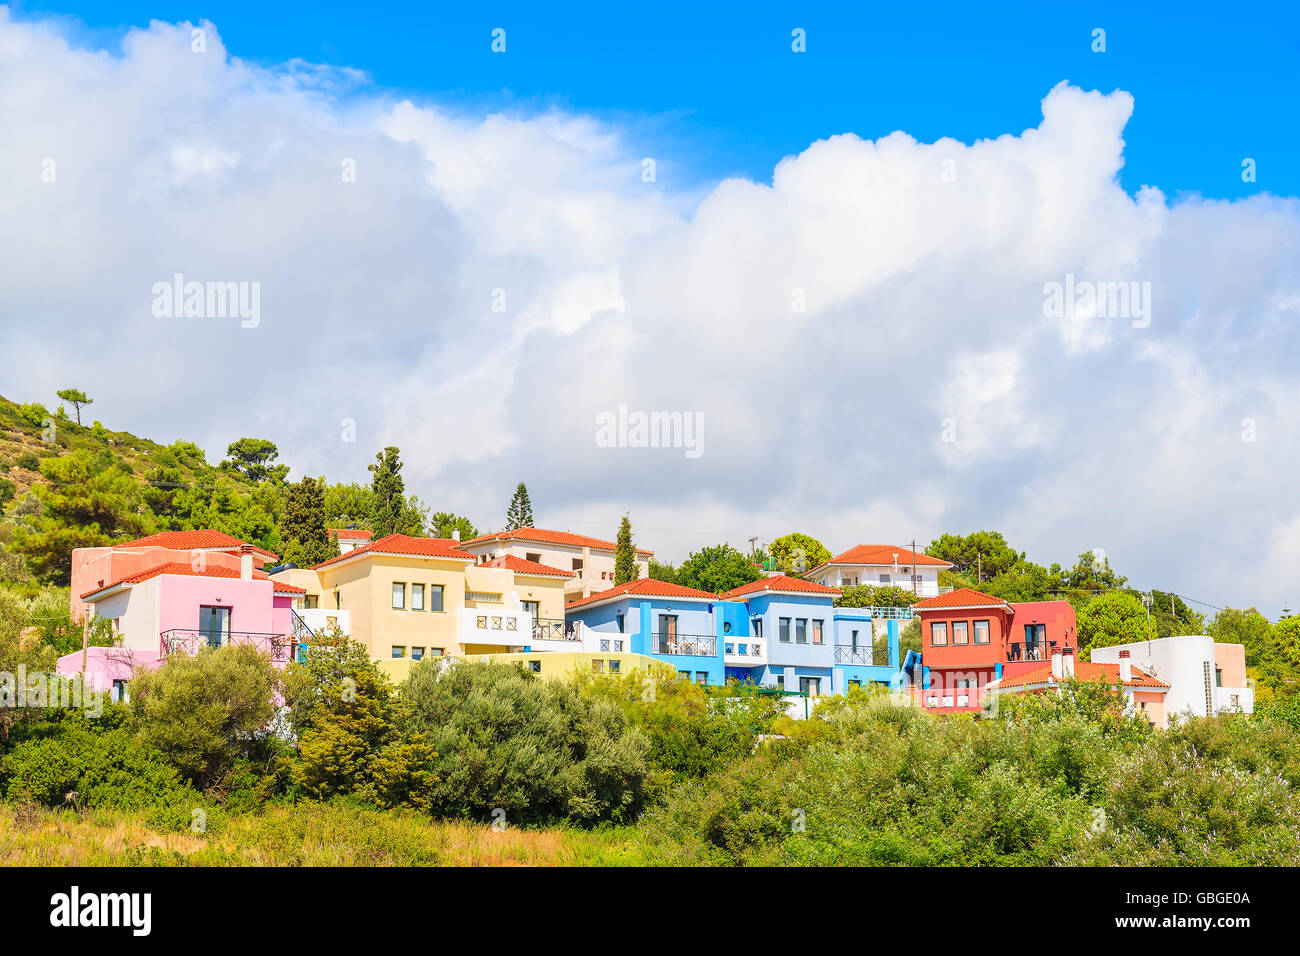 Maisons colorées en vert campagne de l'île de Samos, Grèce Banque D'Images